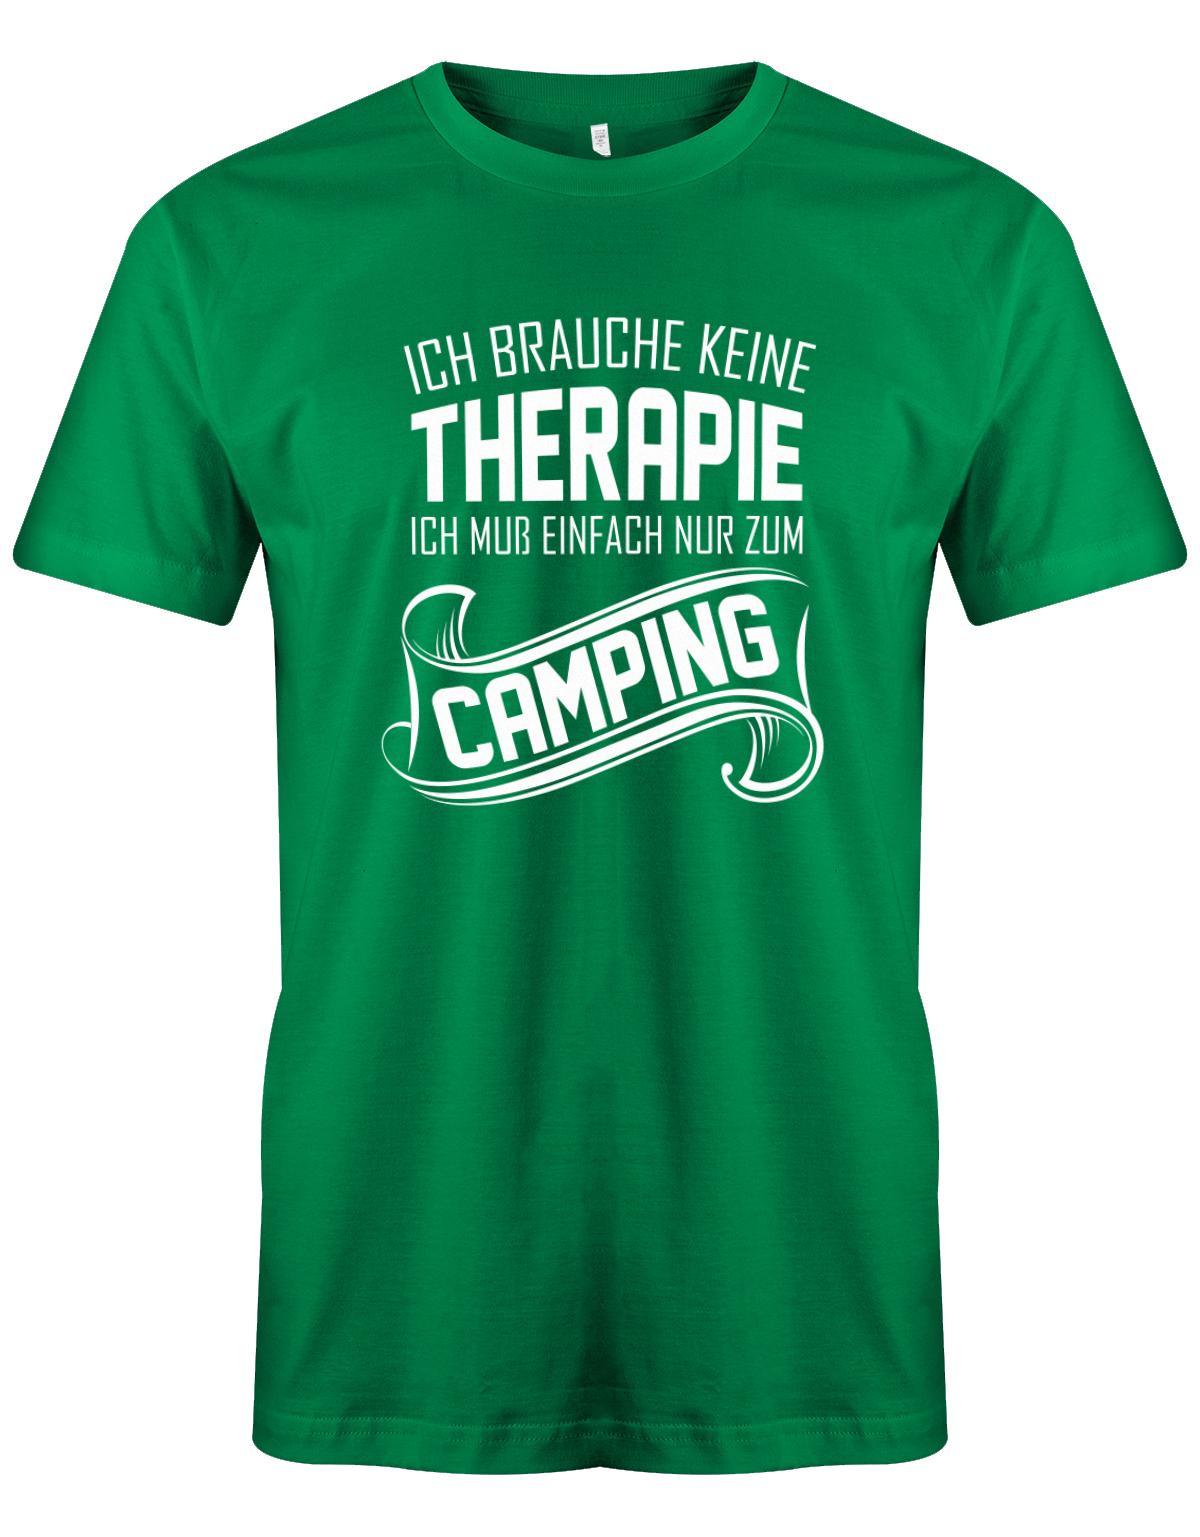 Ich-brauche-keine-Therapie-ich-muss-einfach-nur-zum-camping-Herren-Camper-Shirt-gruen